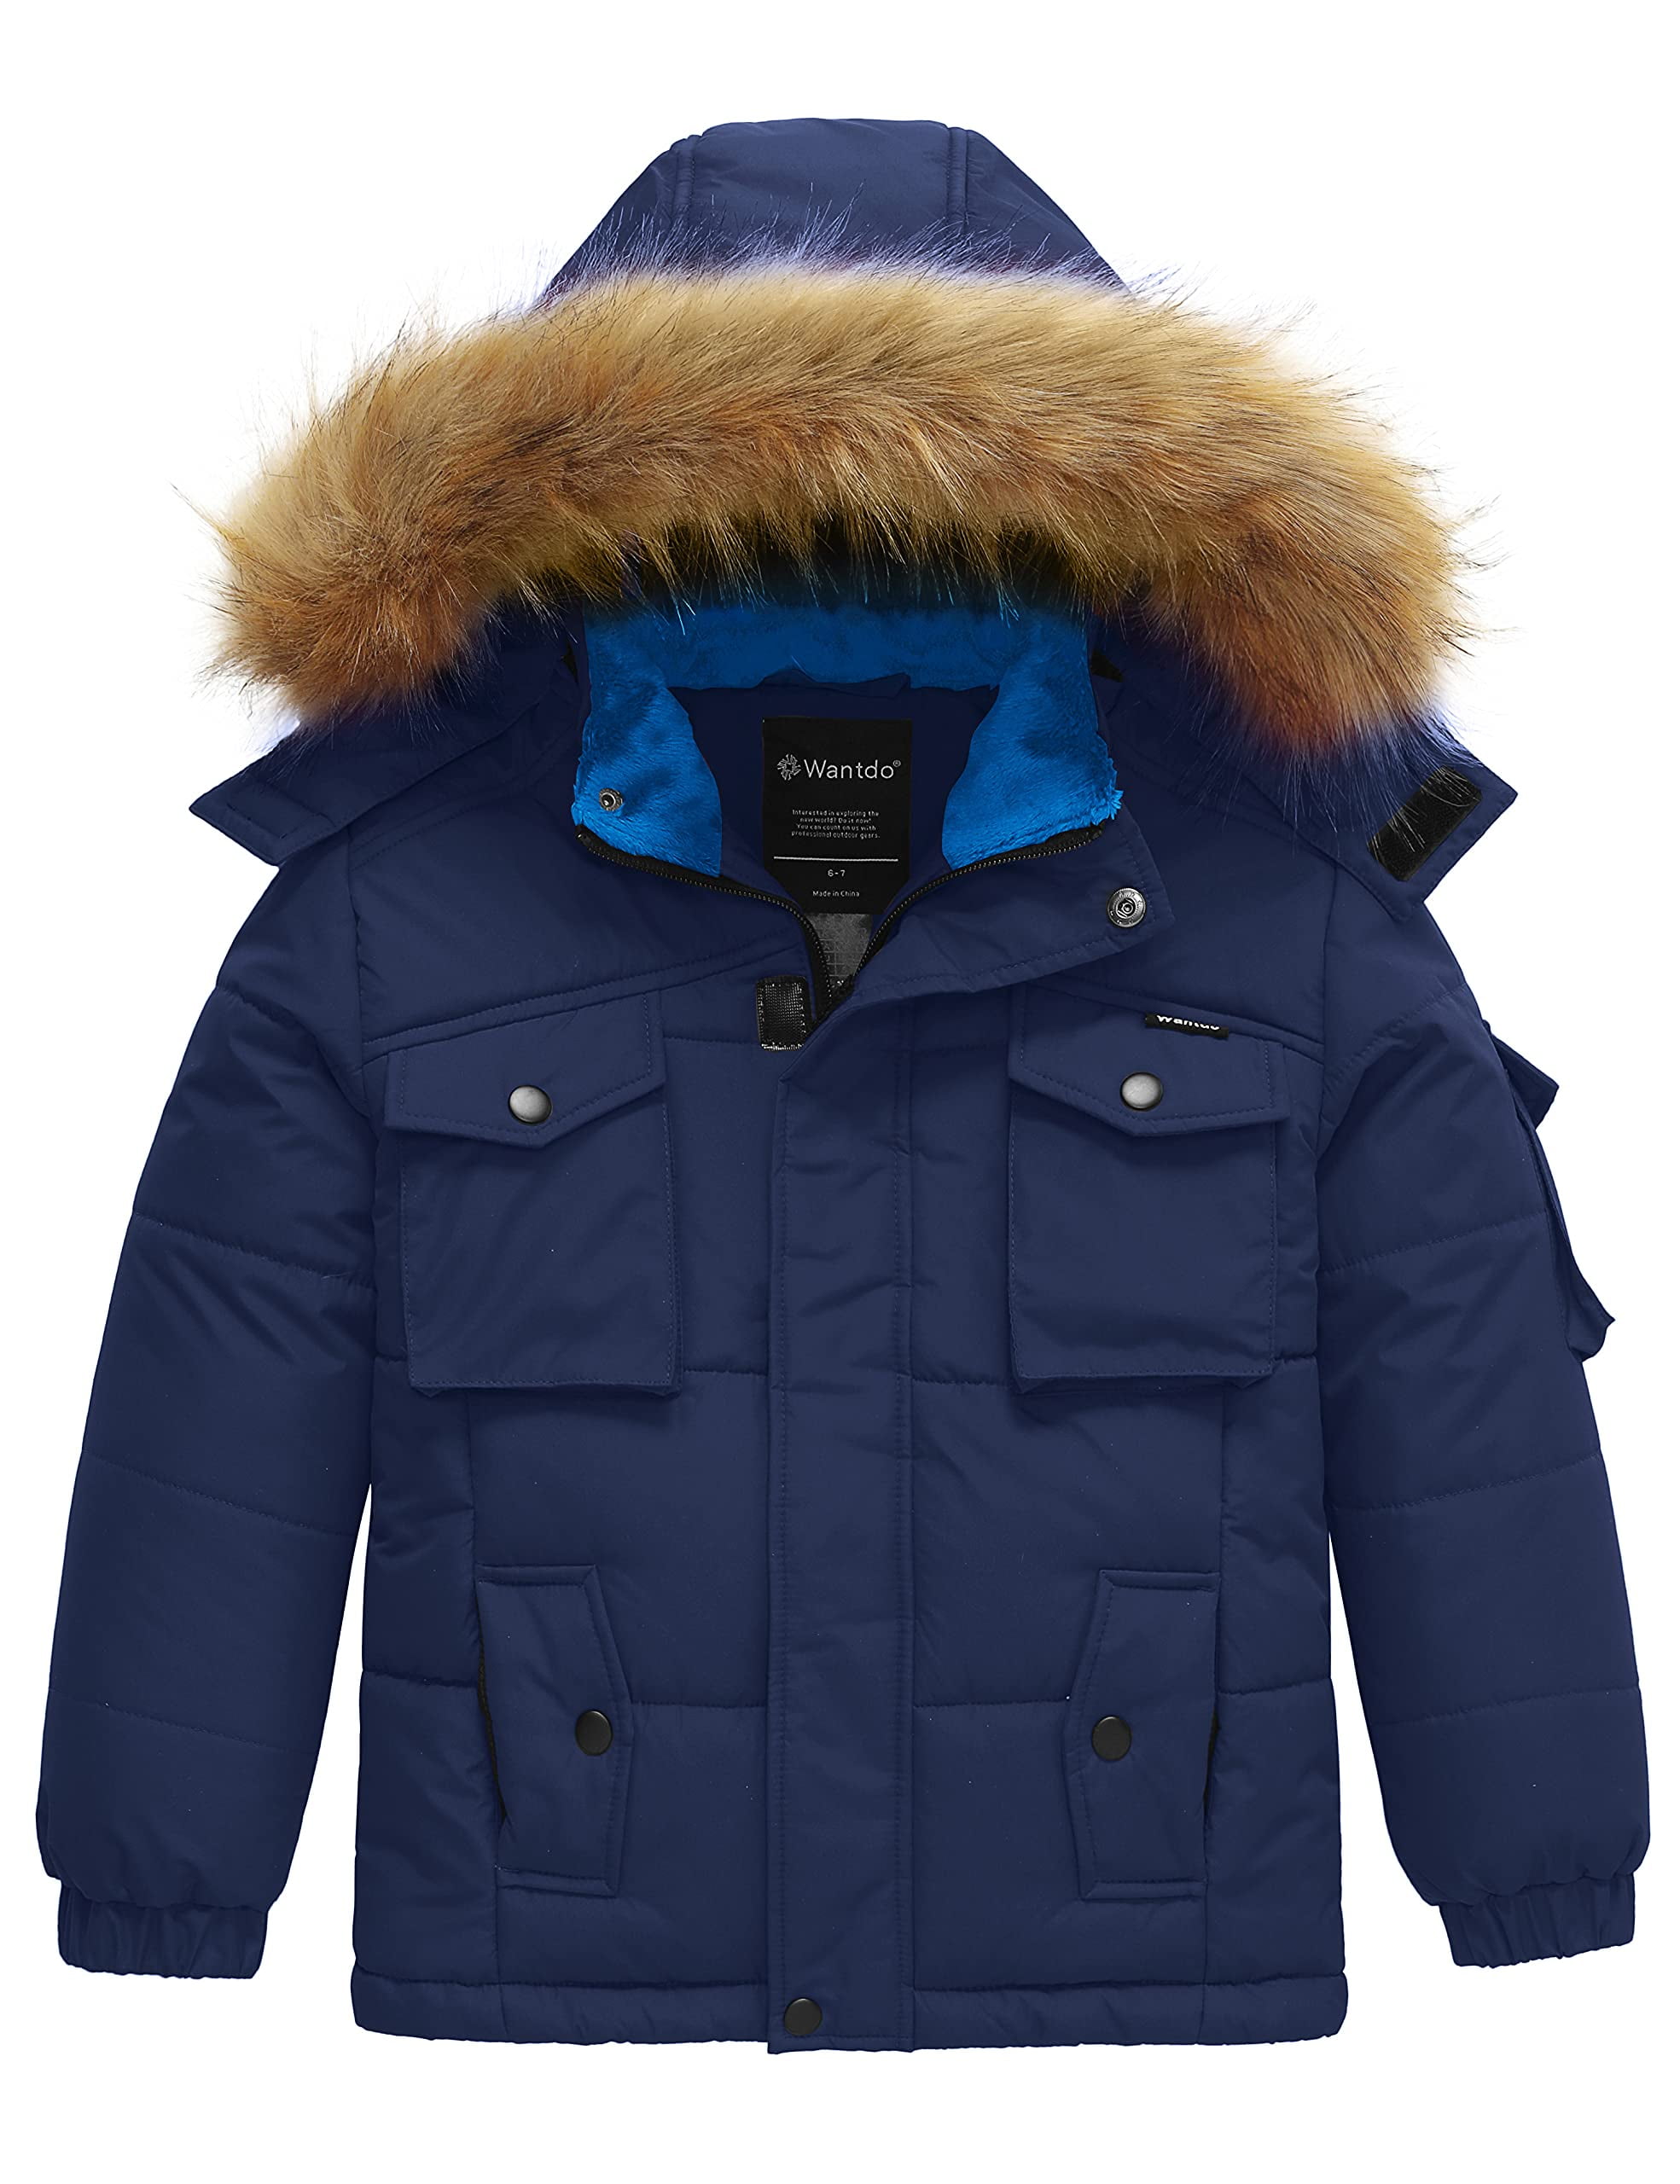 Wantdo Boy's Hooded Warm Winter Coat Thicken Puffer Jacket Waterproof Outwear 